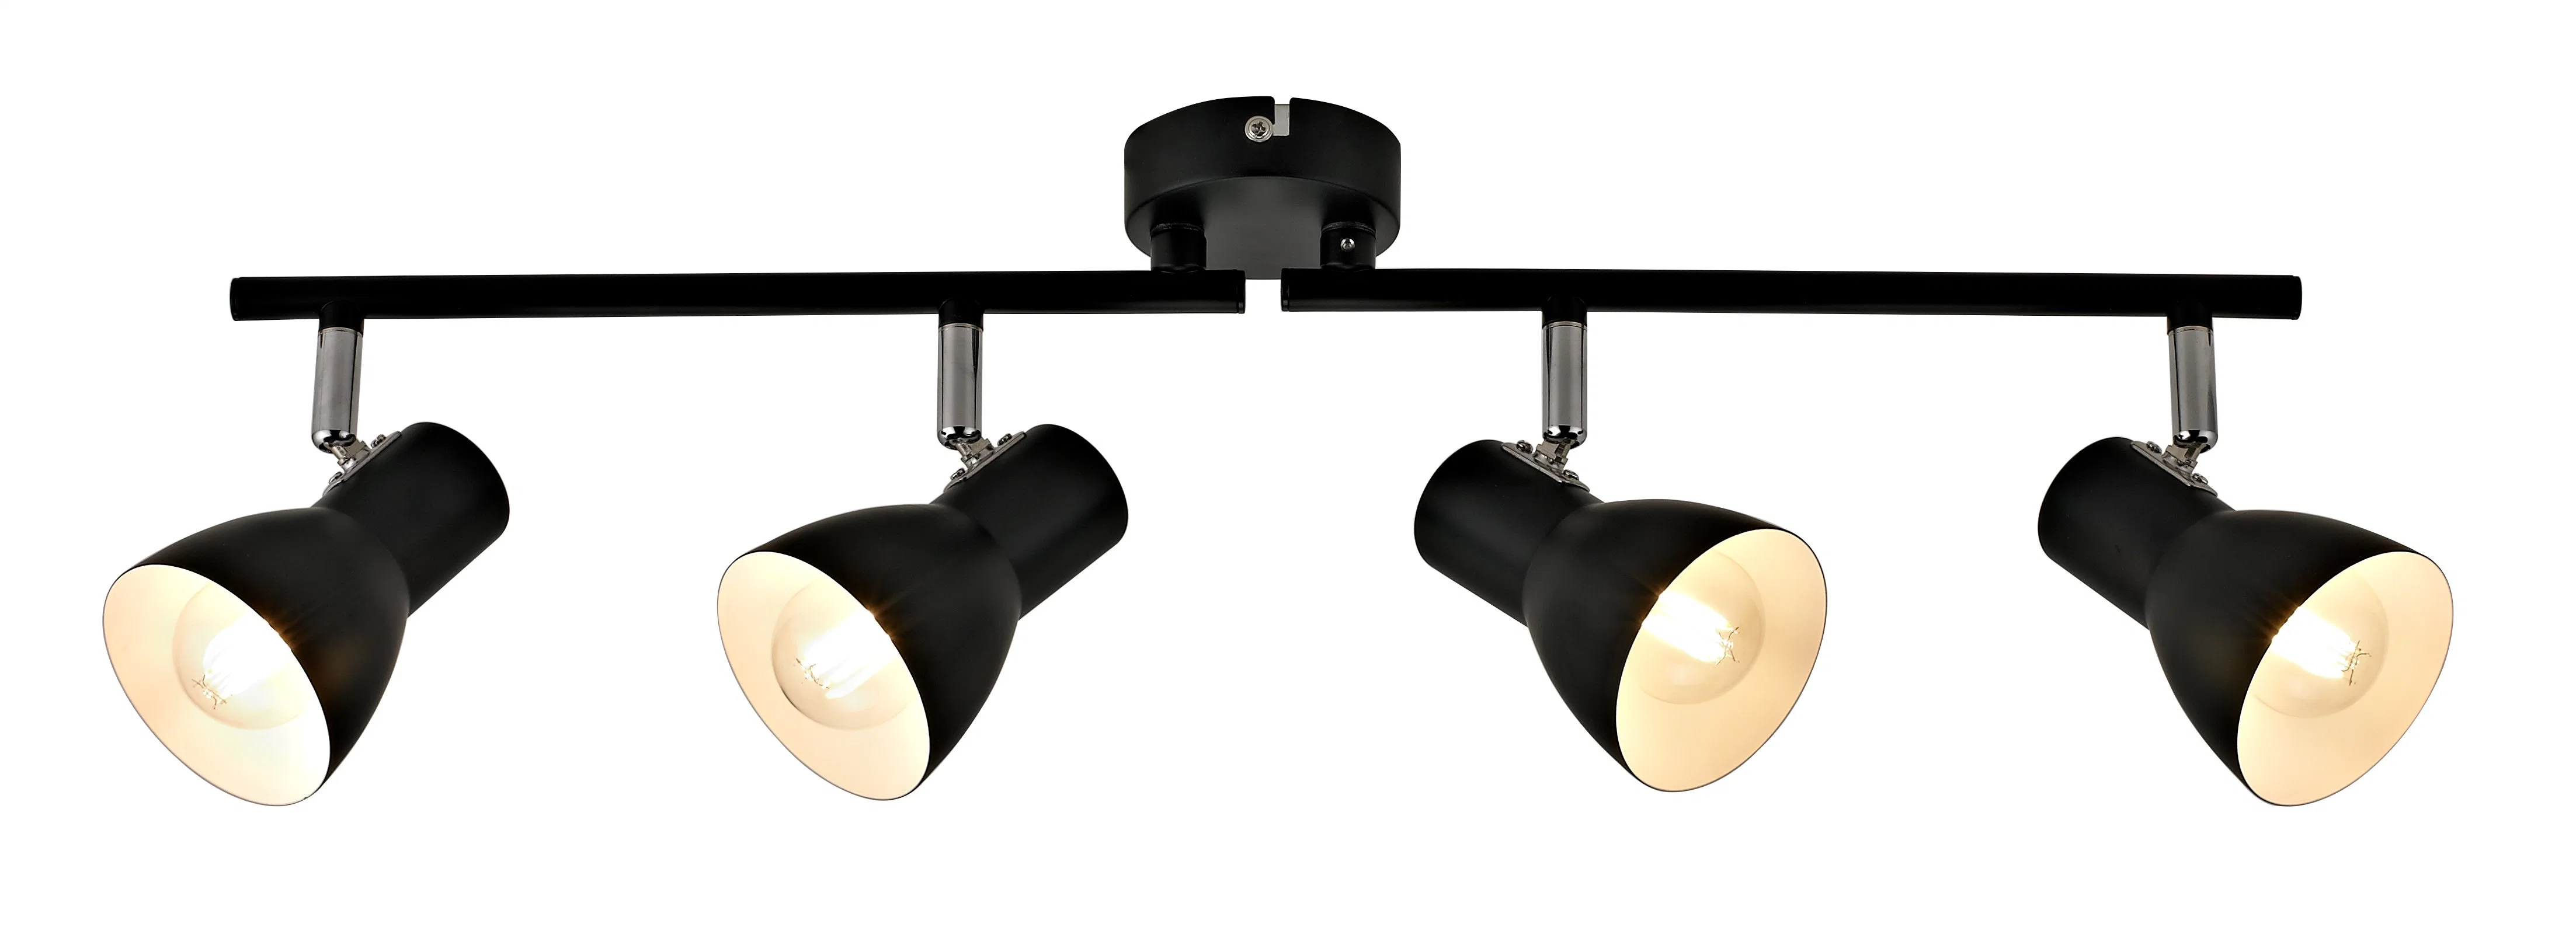 Lampe de plafond LED E14 à prix abordable pour bureau à domicile personnalisé.